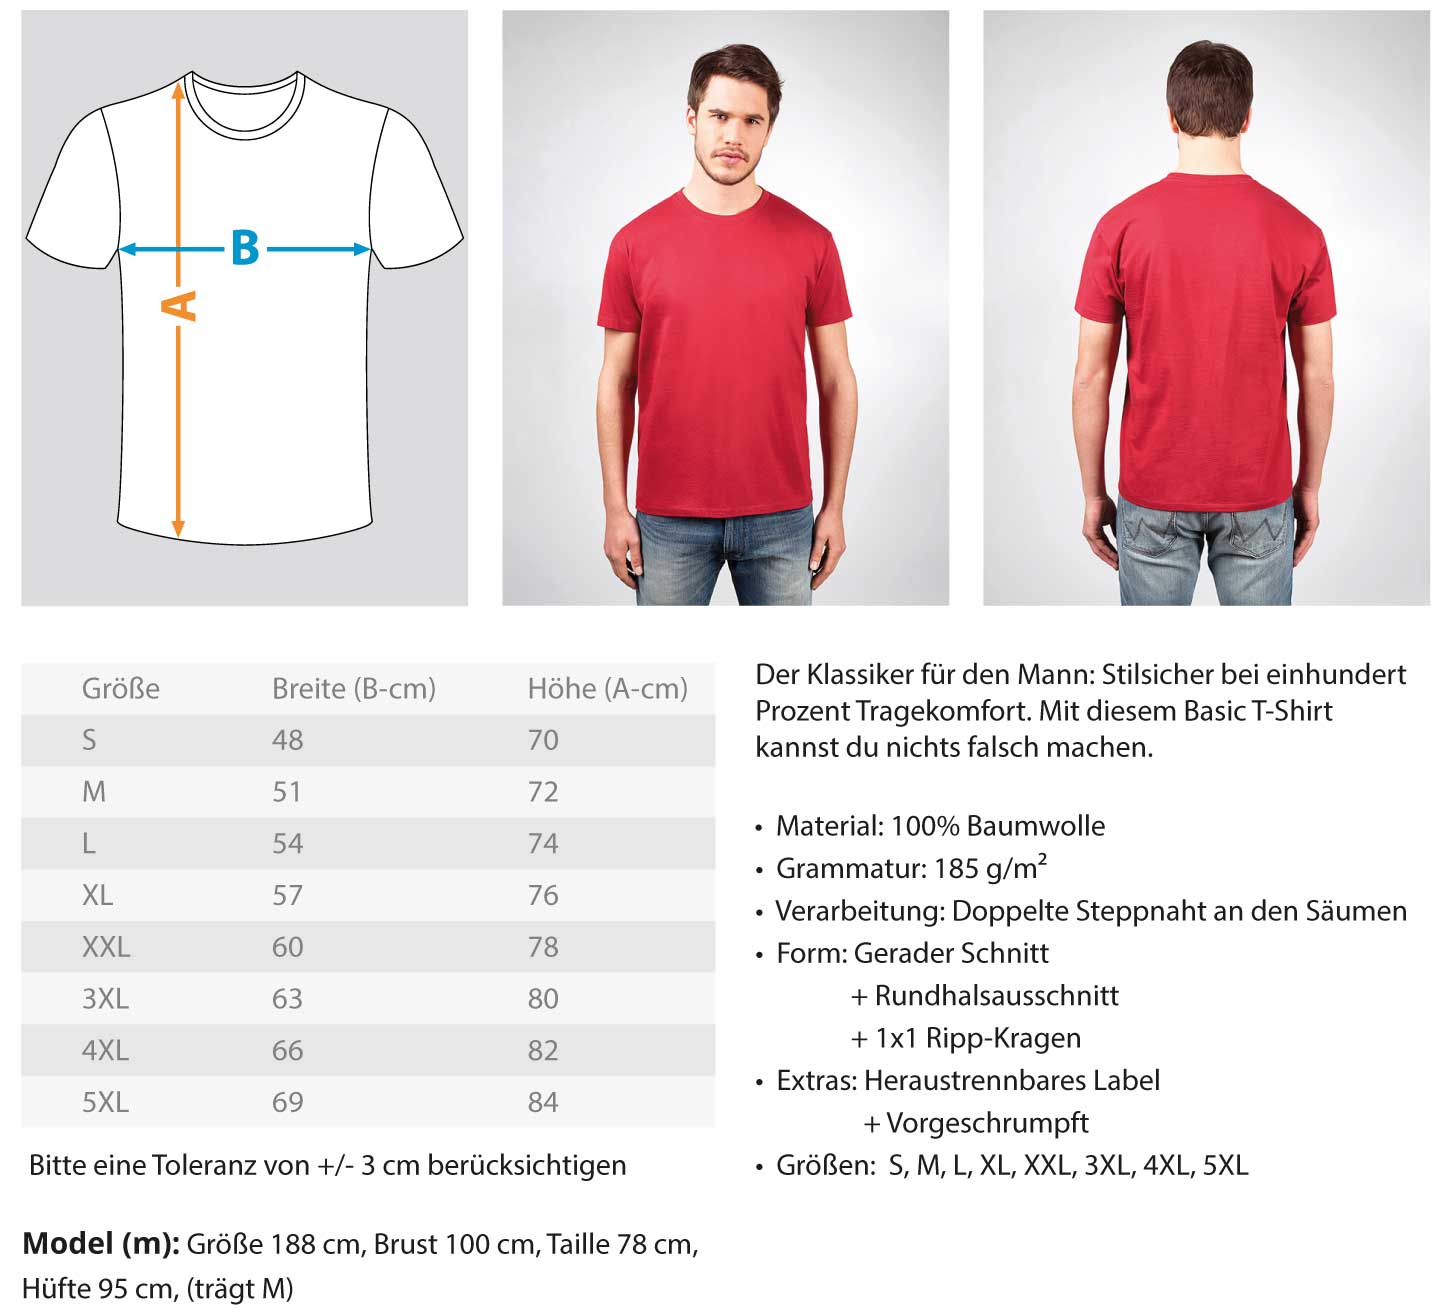 Gerüstbauer Bremen  - Herren Shirt €22.95 Gerüstbauer - Shop >>